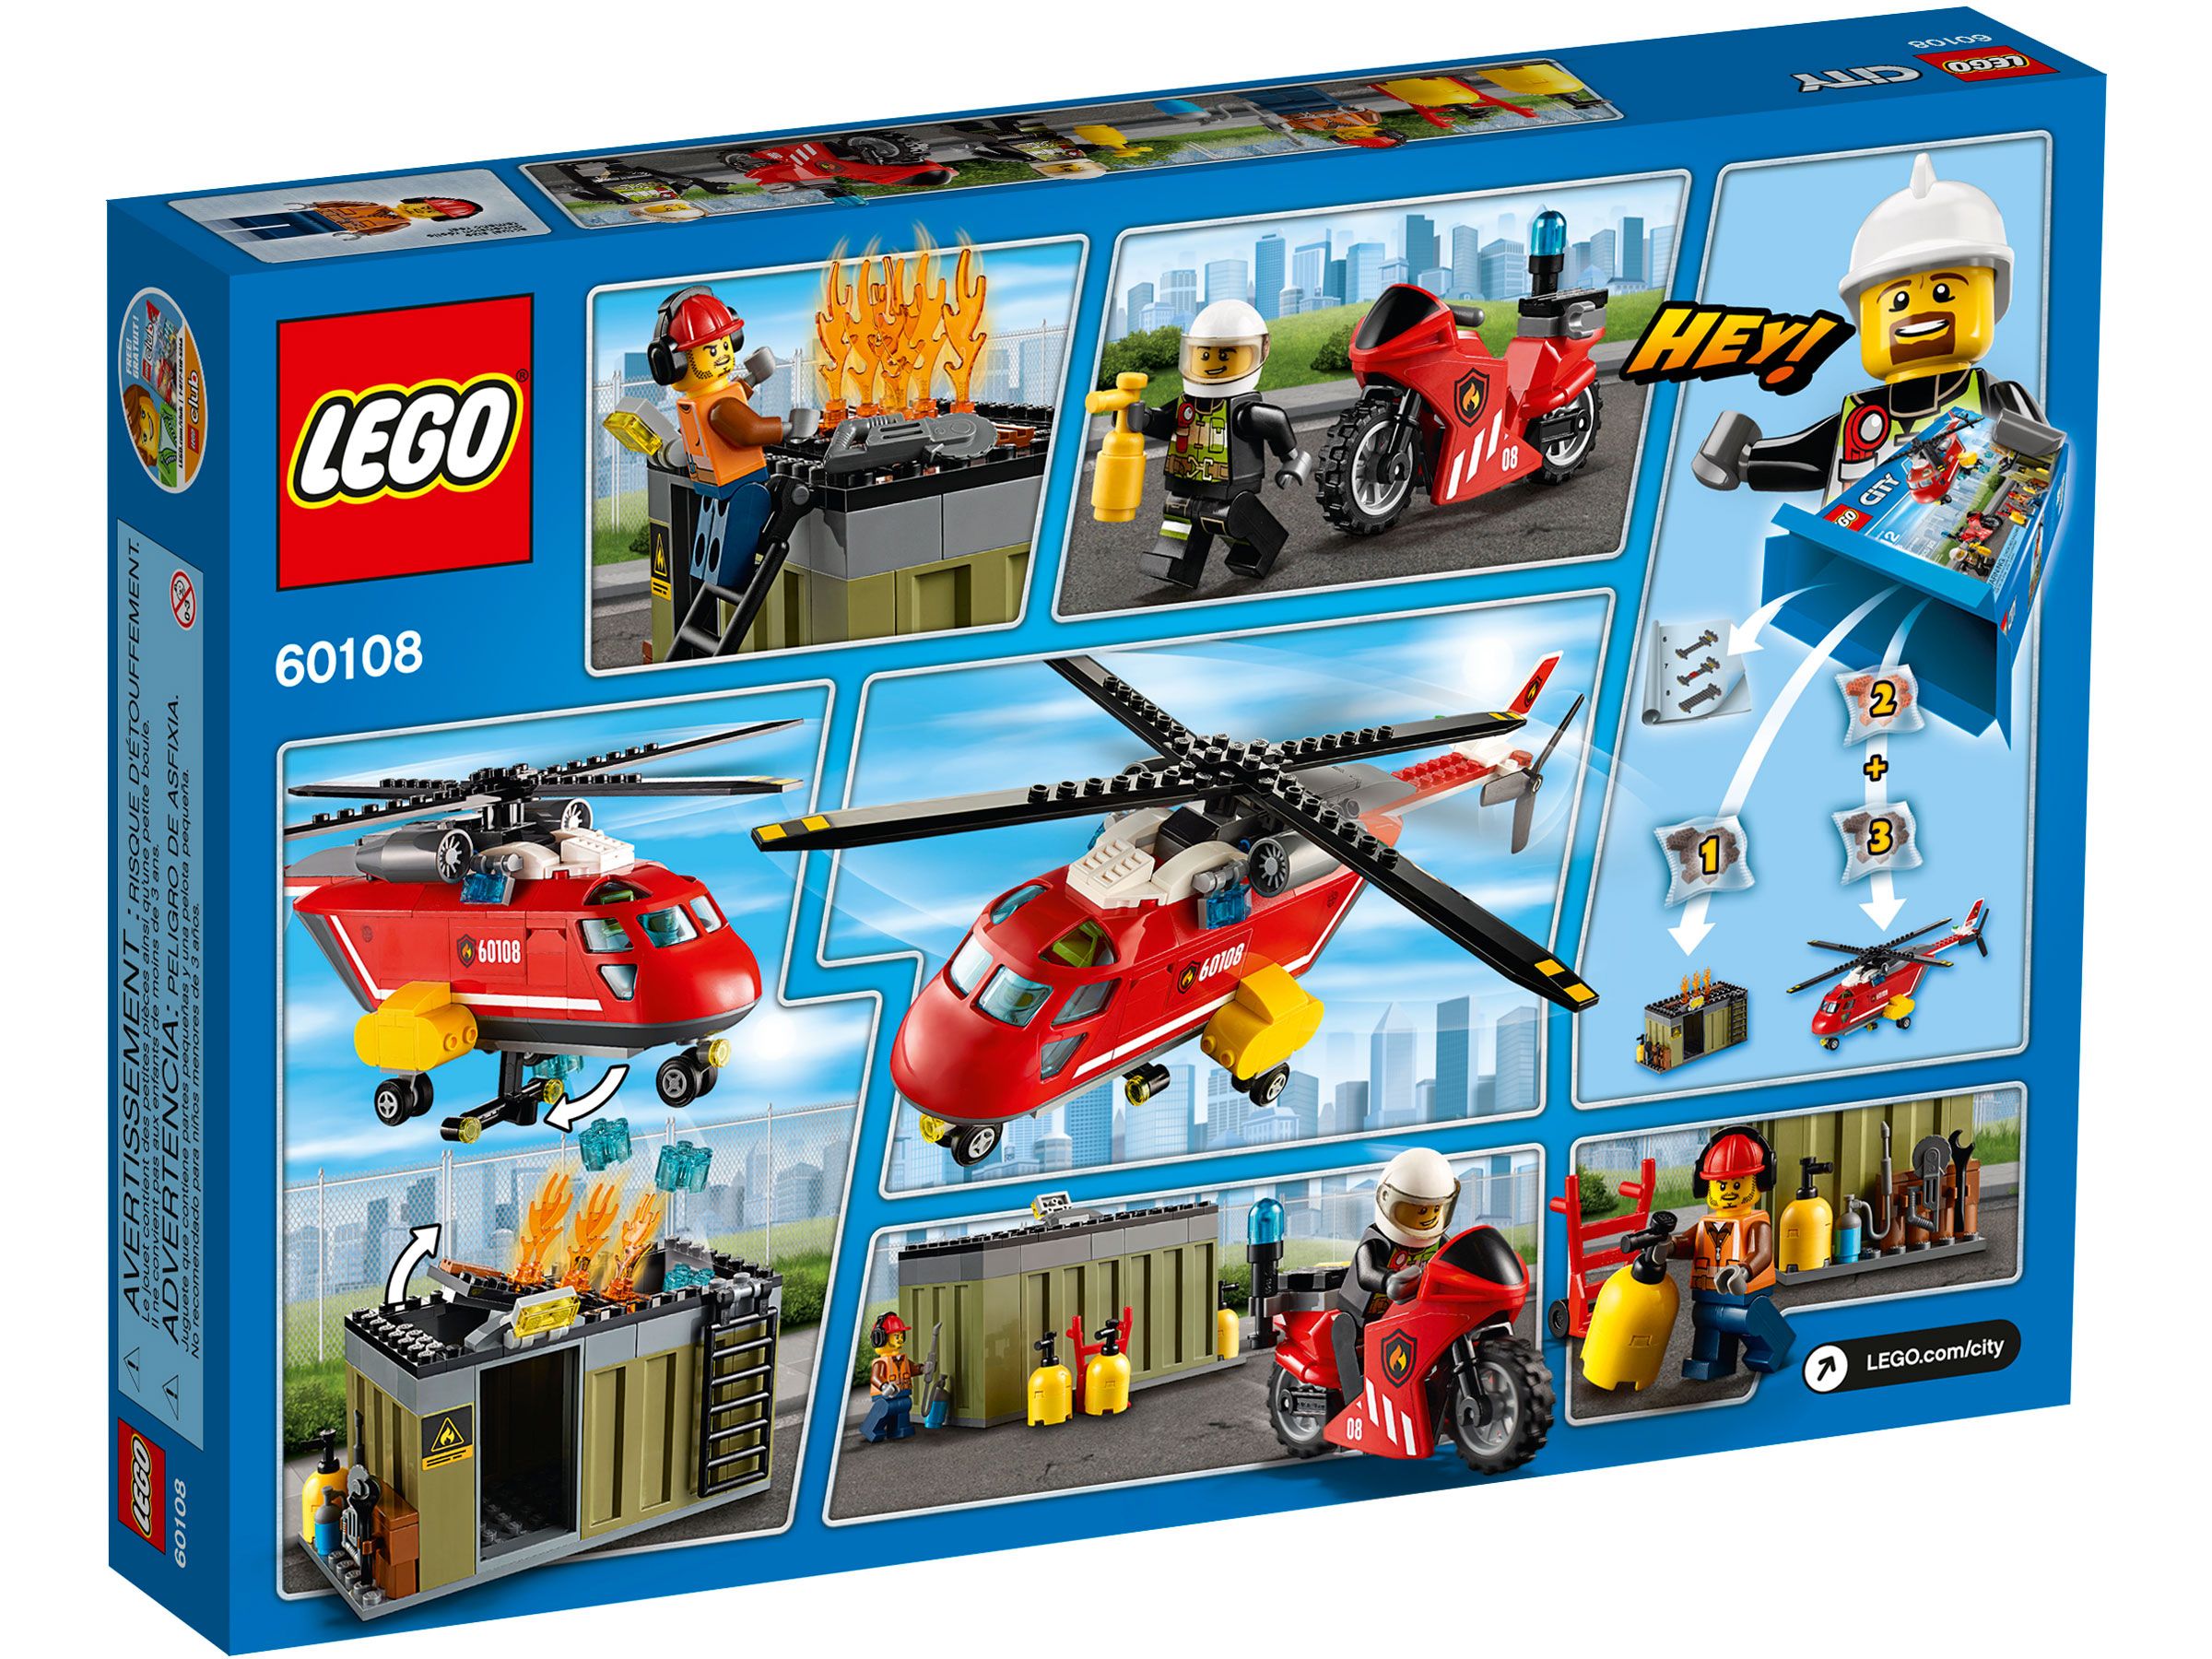 LEGO City 60108 Feuerwehr-Löscheinheit LEGO_60108_box5_na.jpg